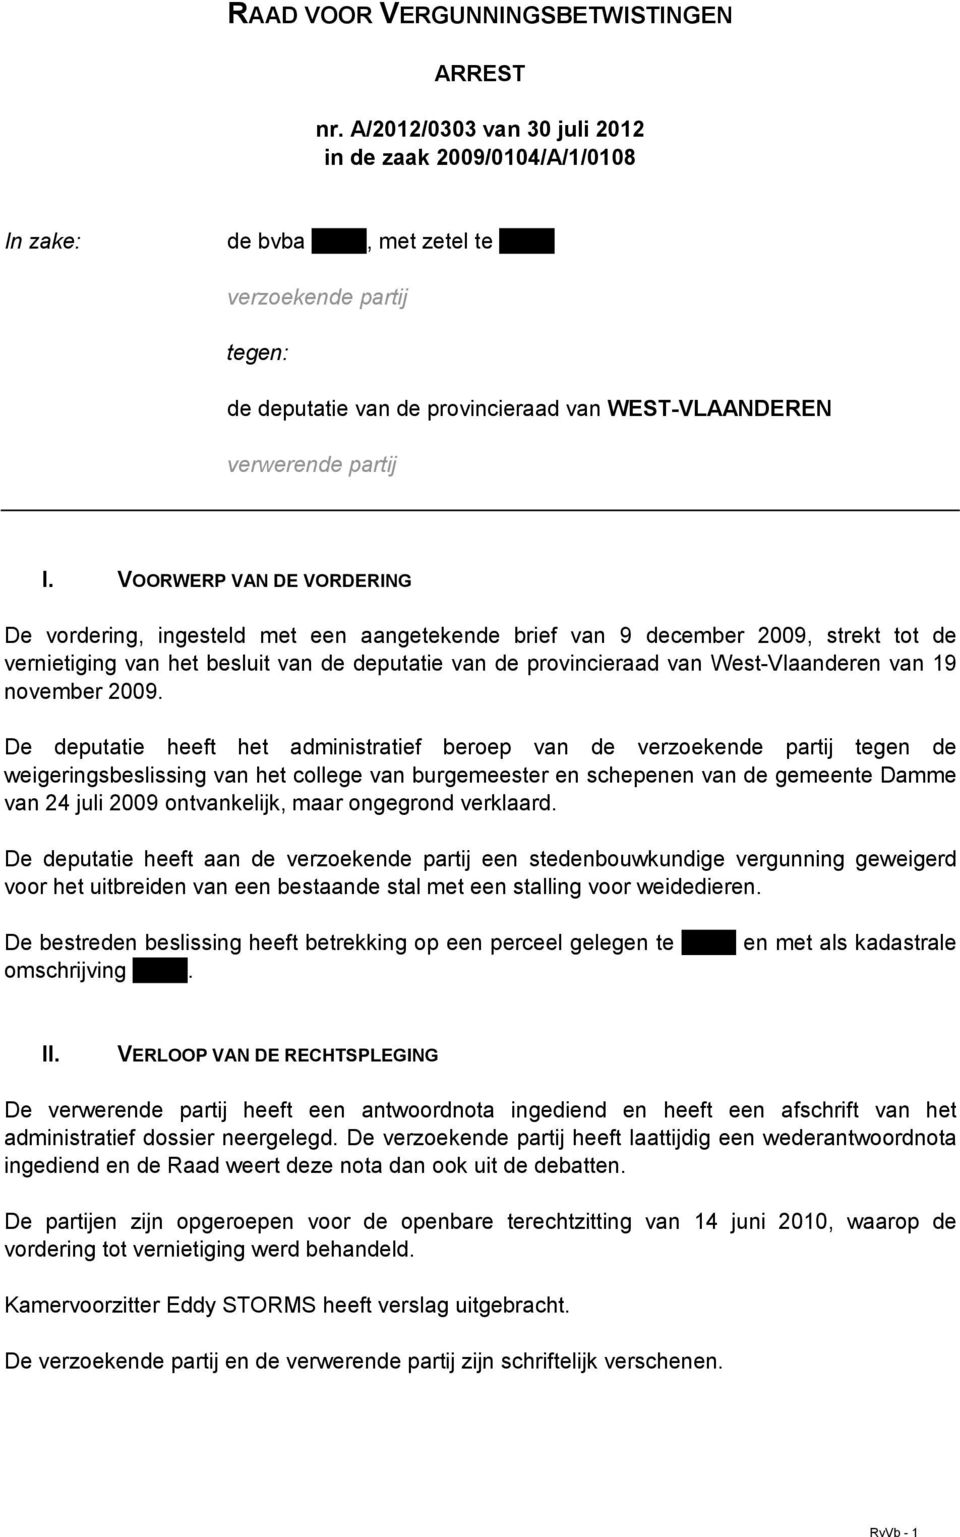 VOORWERP VAN DE VORDERING De vordering, ingesteld met een aangetekende brief van 9 december 2009, strekt tot de vernietiging van het besluit van de deputatie van de provincieraad van West-Vlaanderen